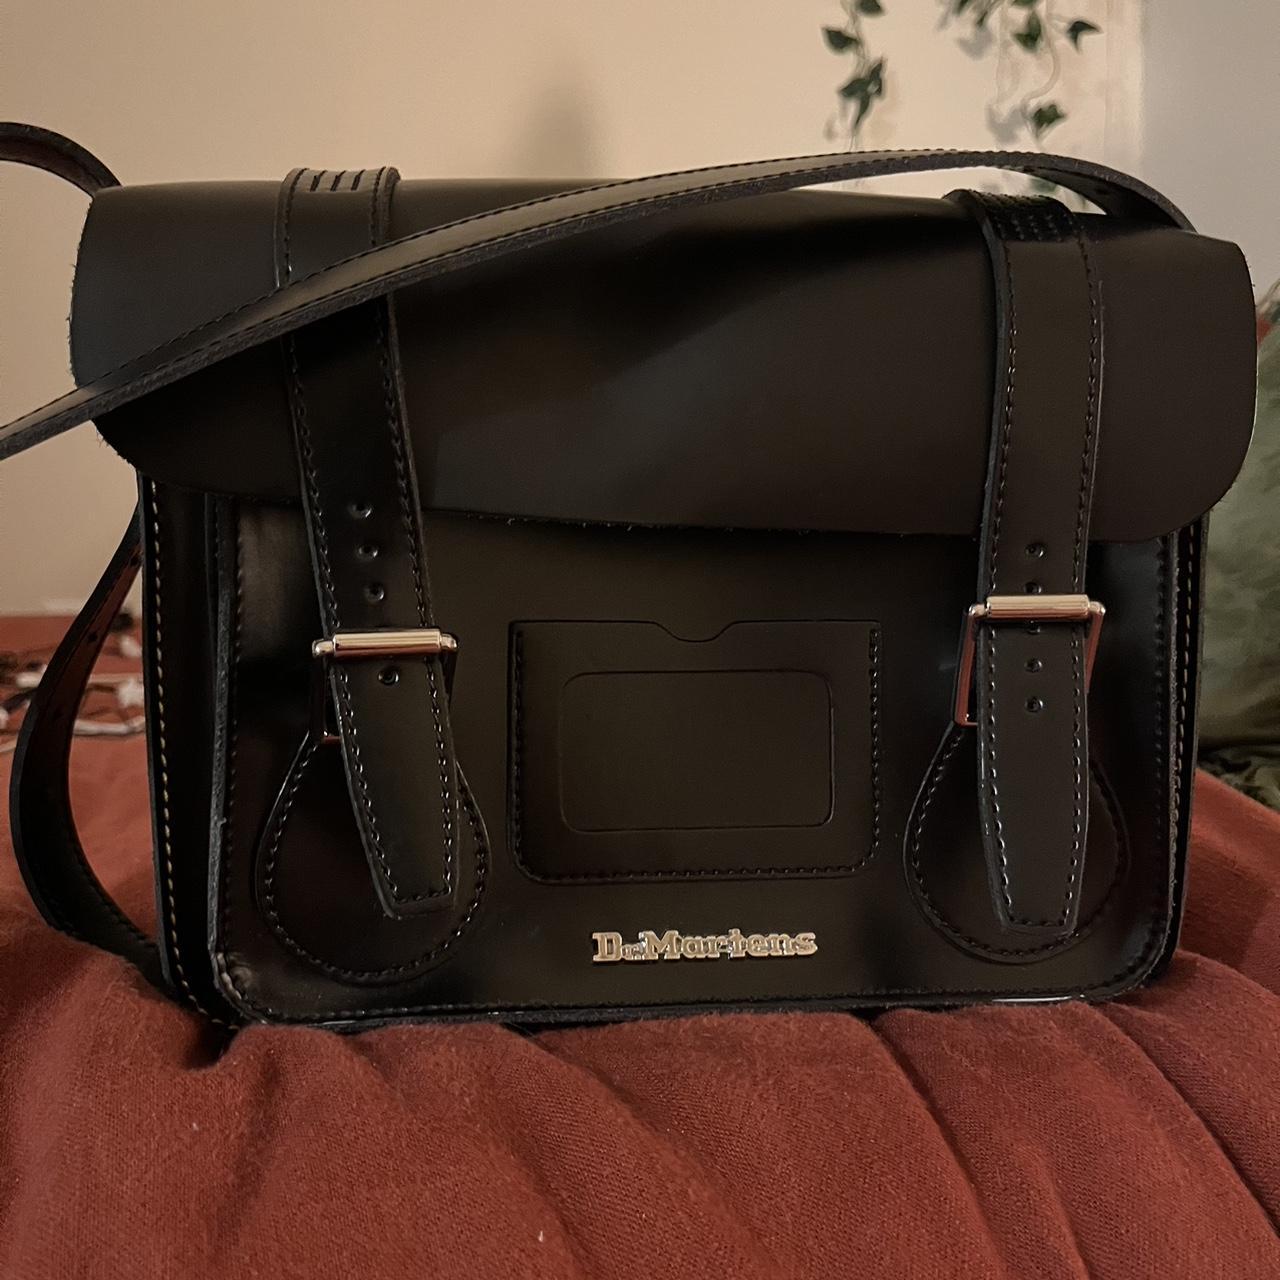 Dr. Martens 7 inch leather shoulder bag 🖤 Never - Depop